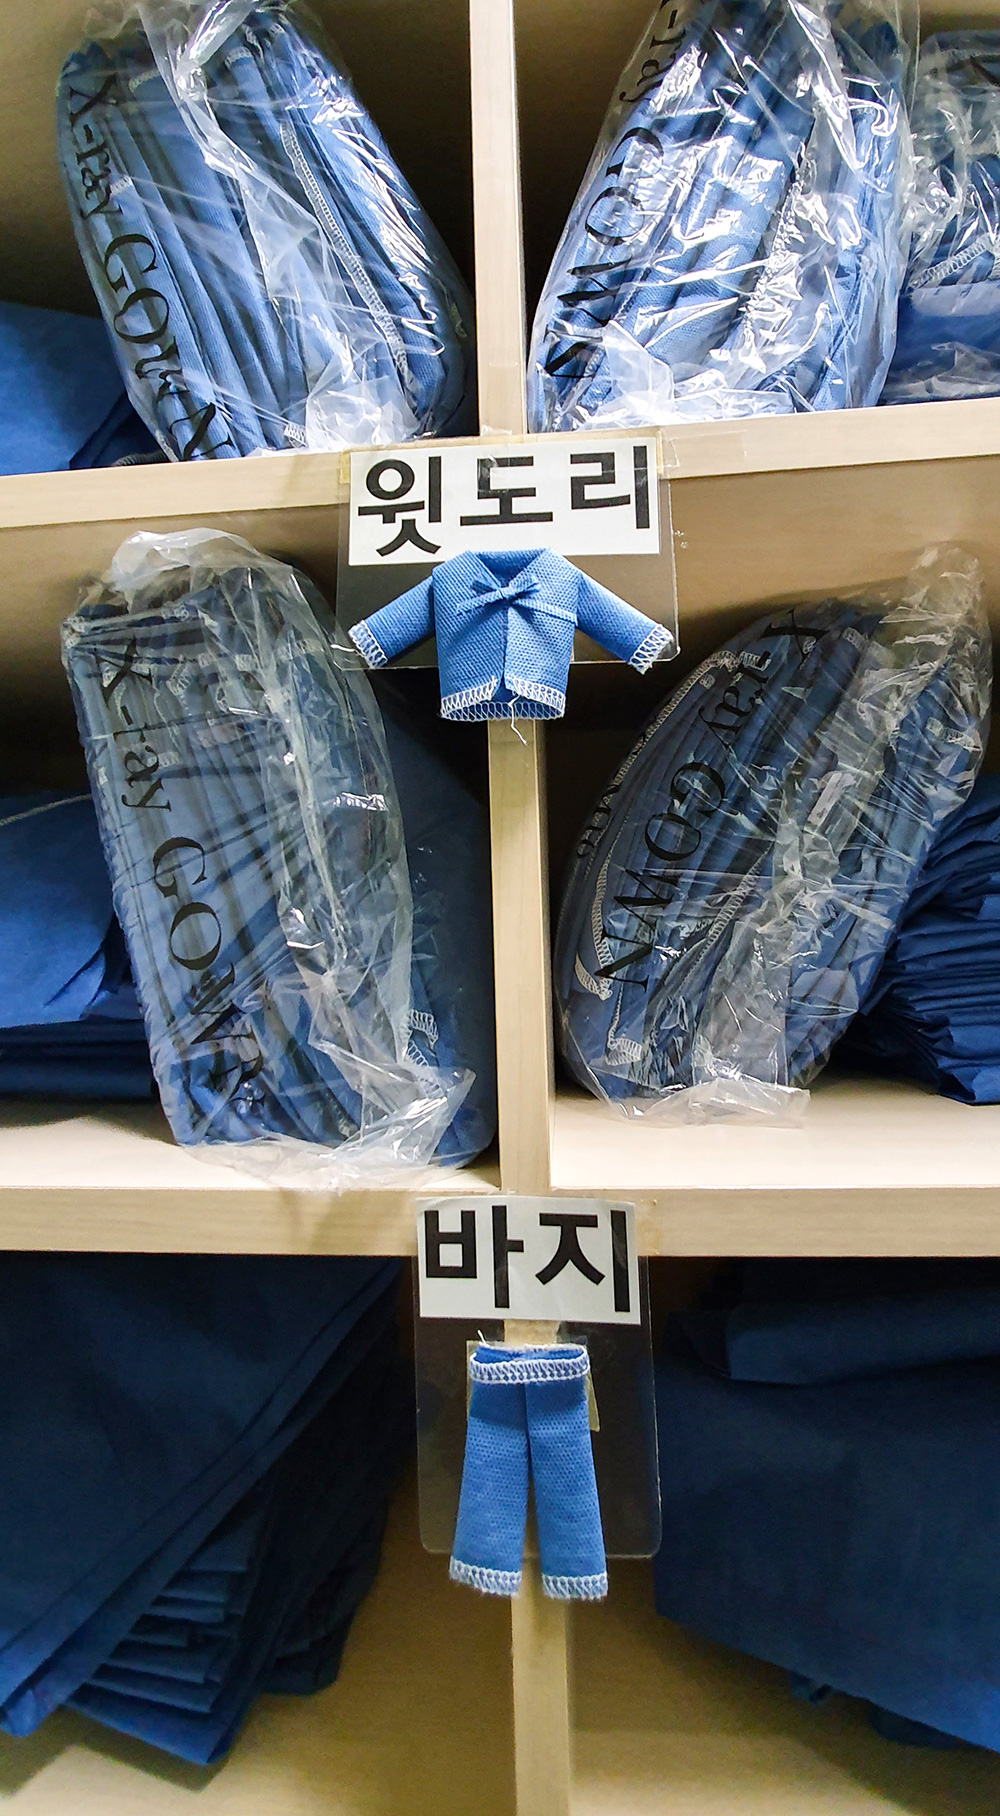 서울보라매병원 영상의학과 탈의실. 상의(윗도리)와 하의(바지)가 비슷하게 생겨서, 글자와 함께 귀여운 옷가지 오너먼트를 붙여놓았다.